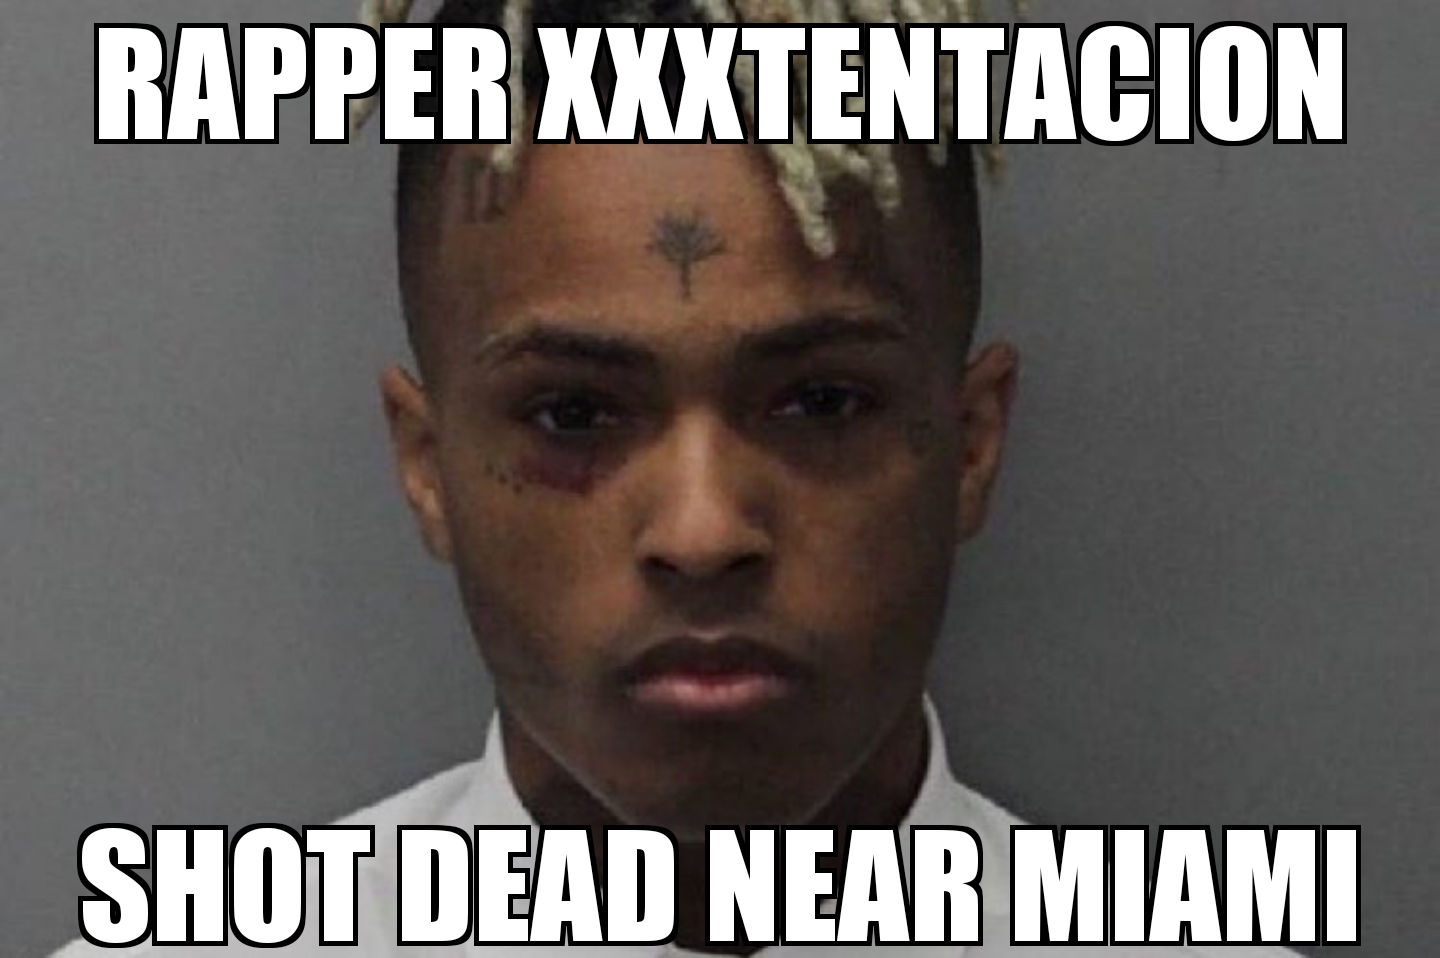 XXXTentacion killed